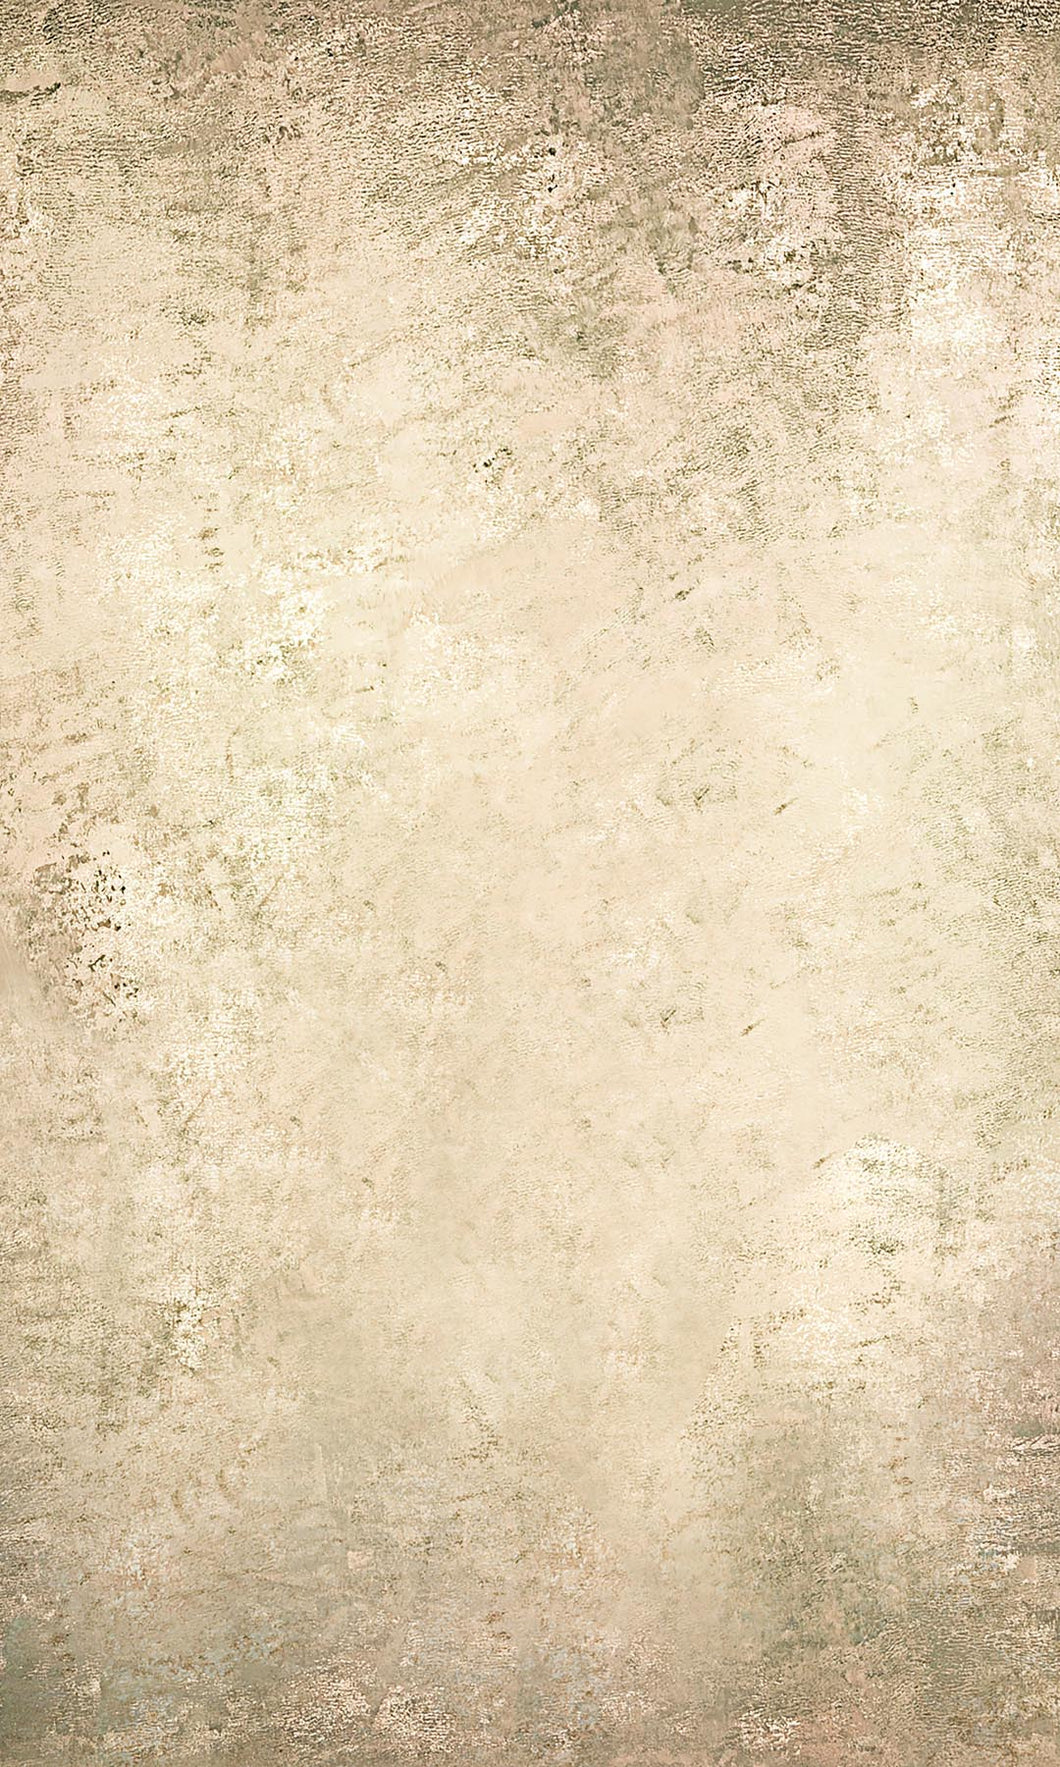 Kate Telón de fondo beige de textura abstracta diseñado por Kate Image